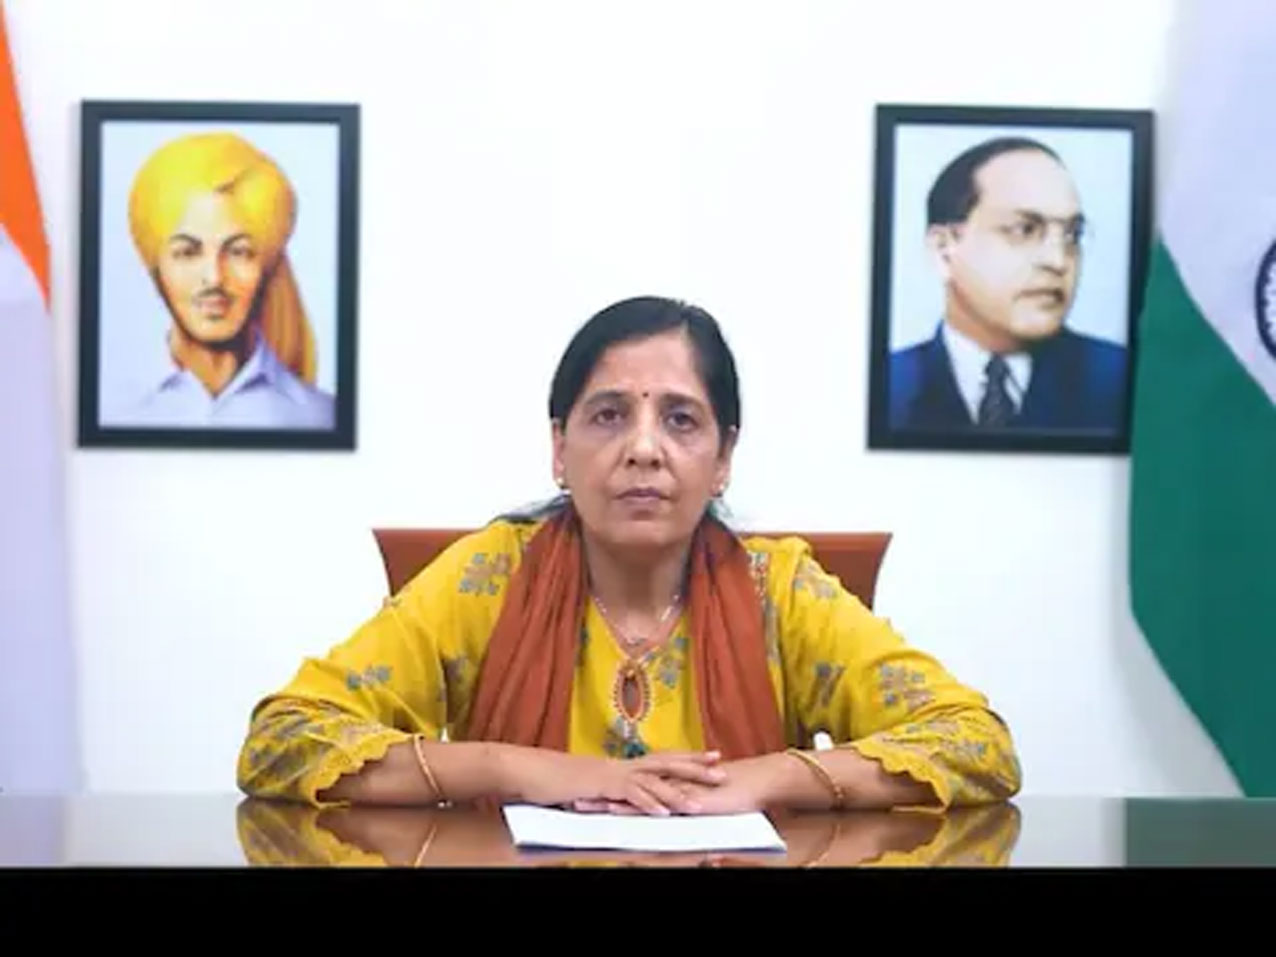 सुनीता केजरीवाल बनेगी दिल्ली की सीएम, सीएम केजरीवाल के पत्र के बहाने आई सामनें